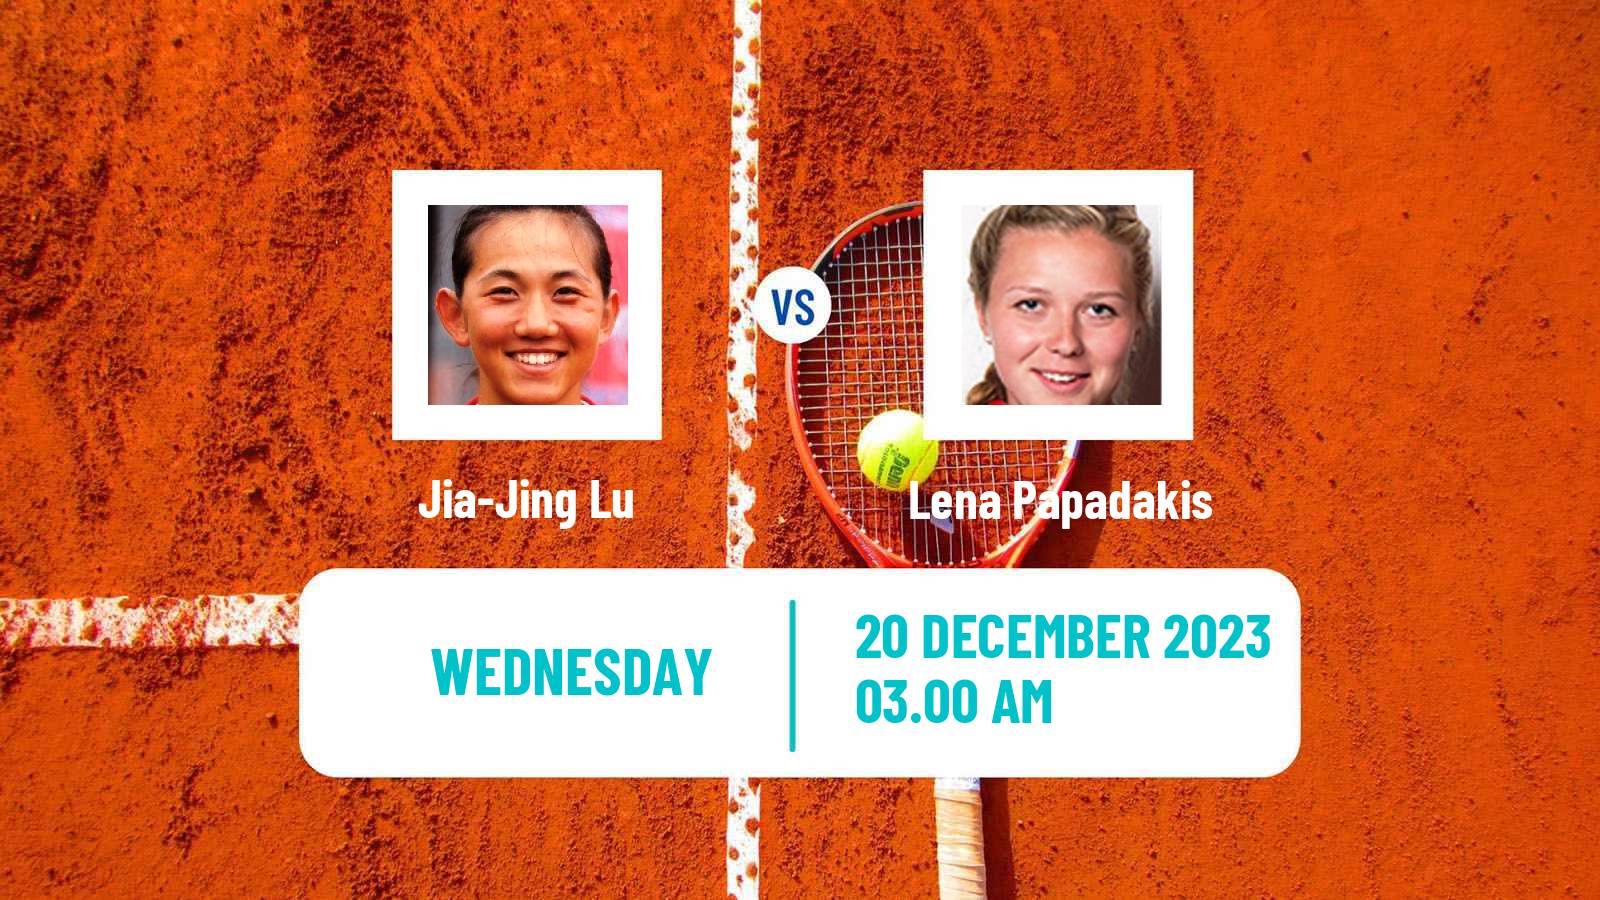 Tennis ITF W25 Nairobi 2 Women Jia-Jing Lu - Lena Papadakis